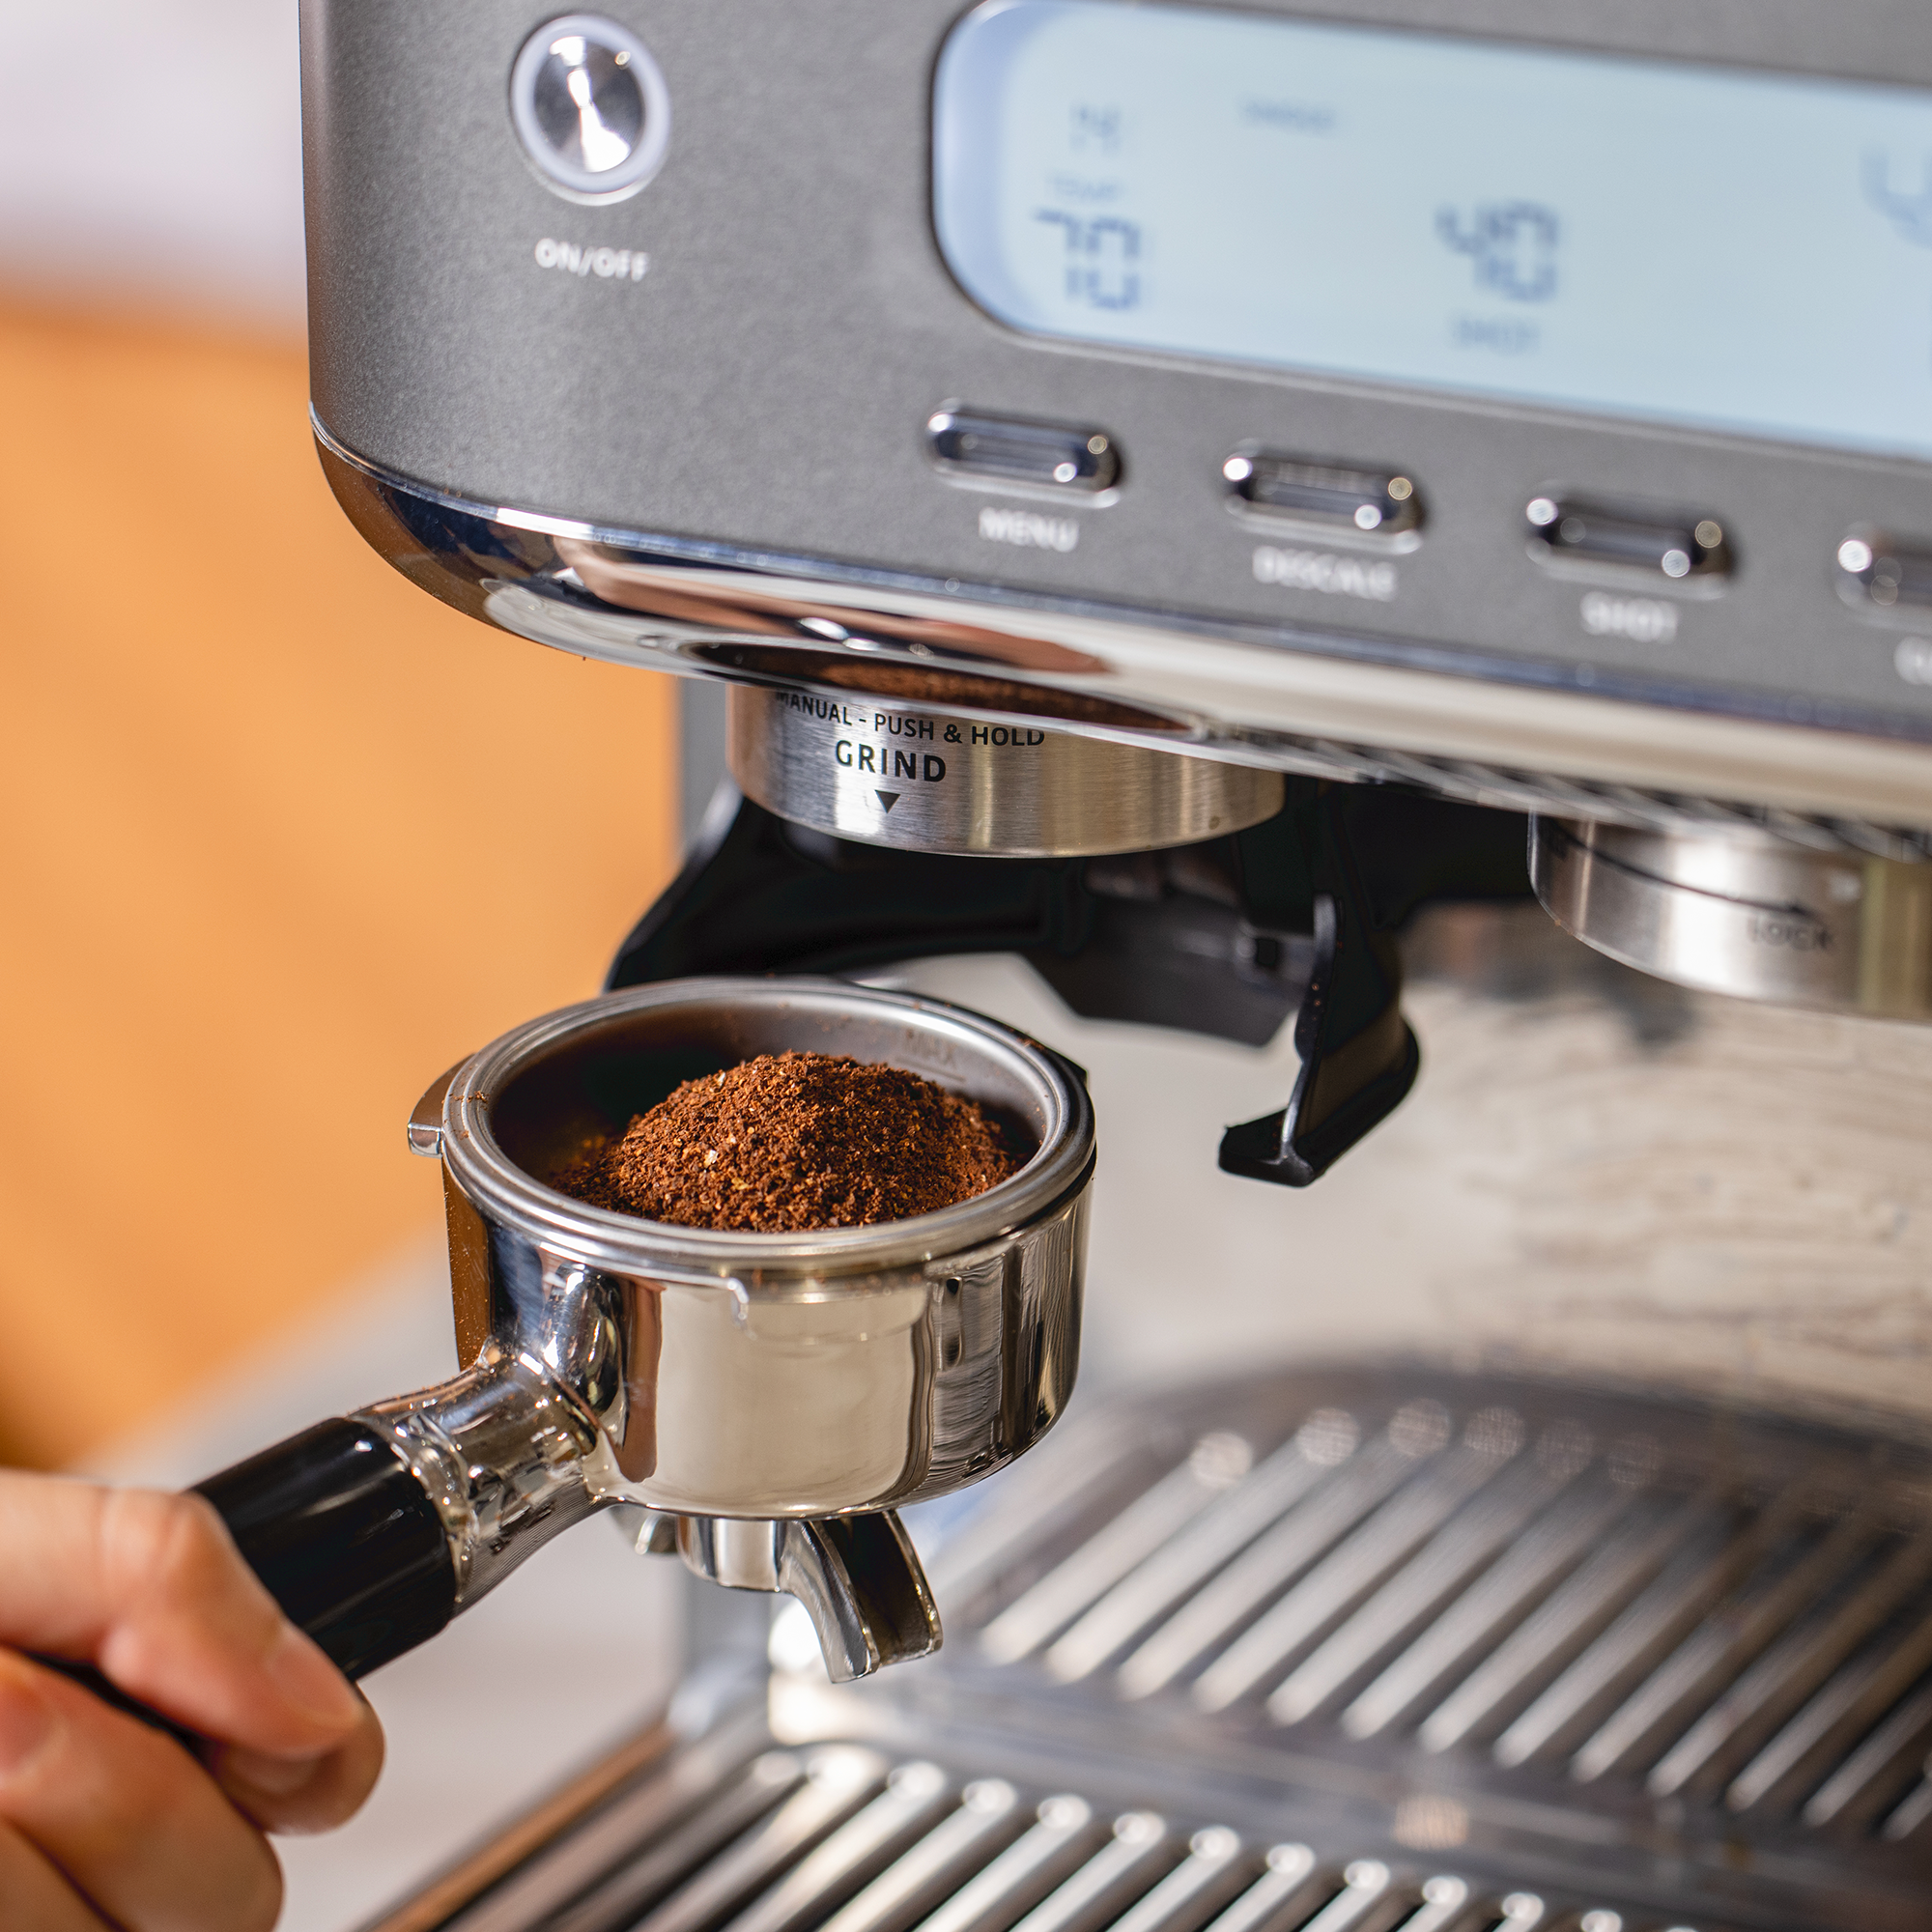 Sage The Barista Pro SES878 Coffee Espresso Maker Machine Silver/Black  Kitchen